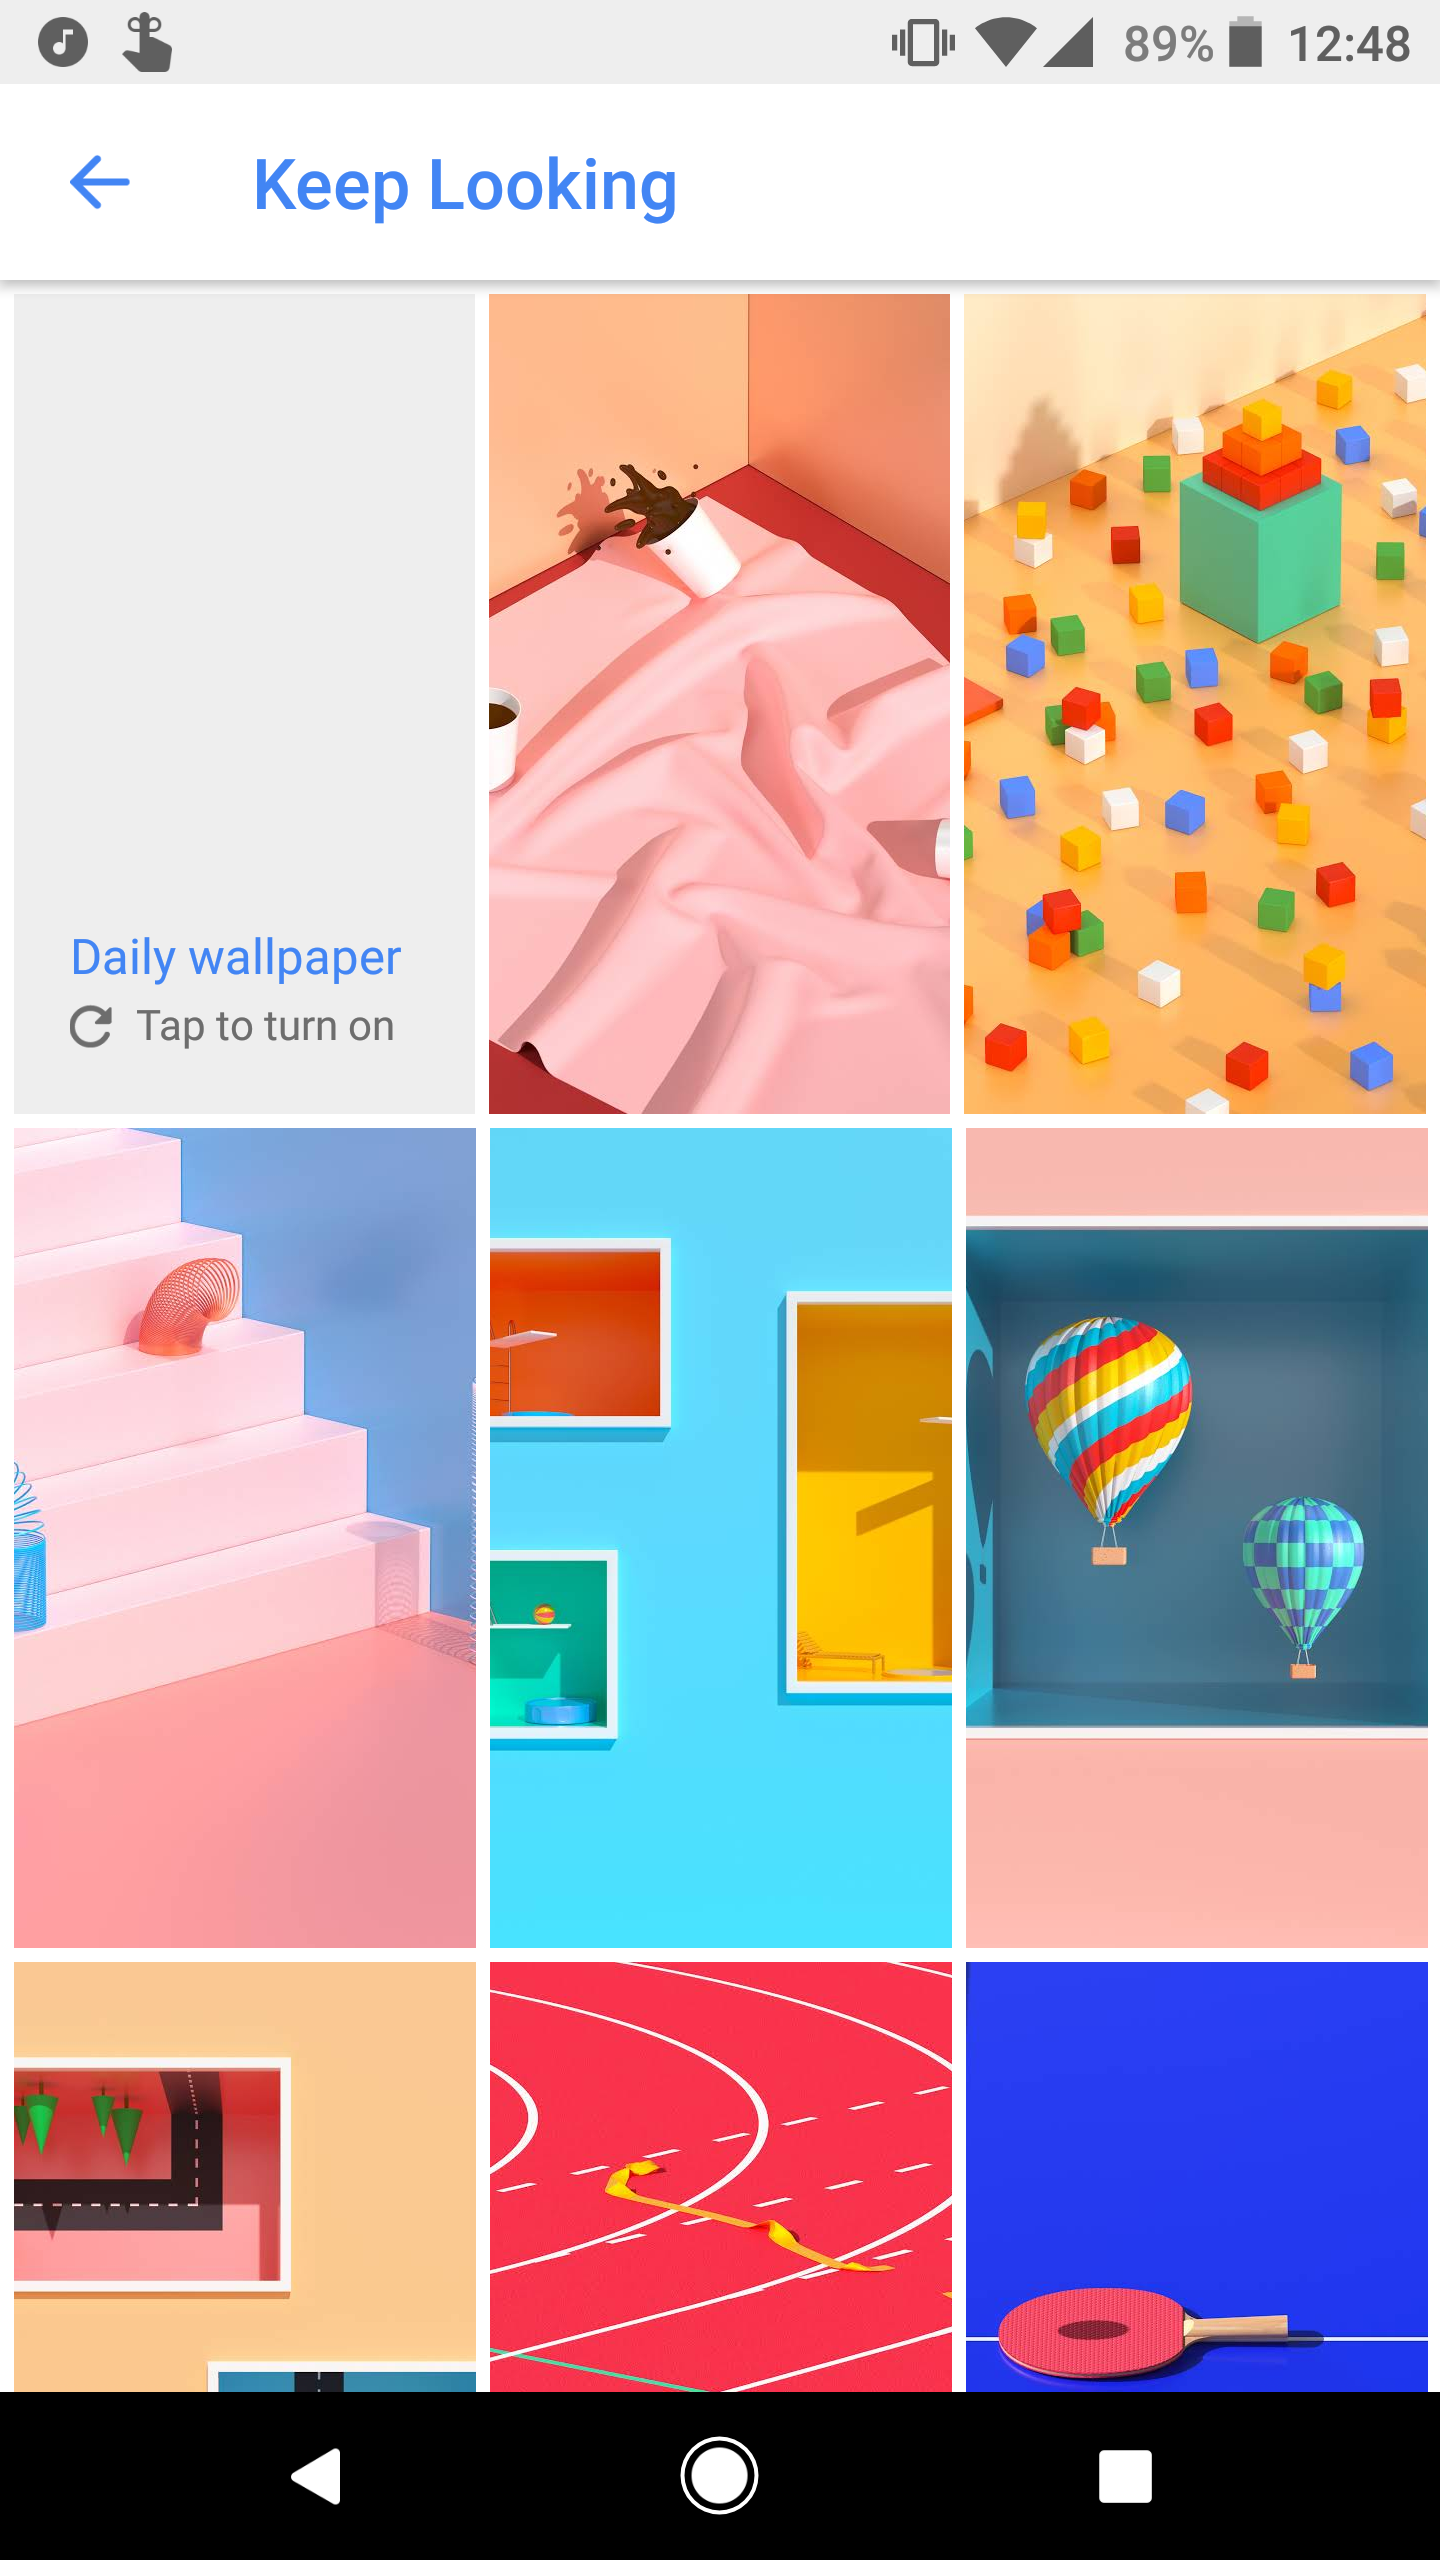 Google Wallpapers Keep Looking - HD Wallpaper 